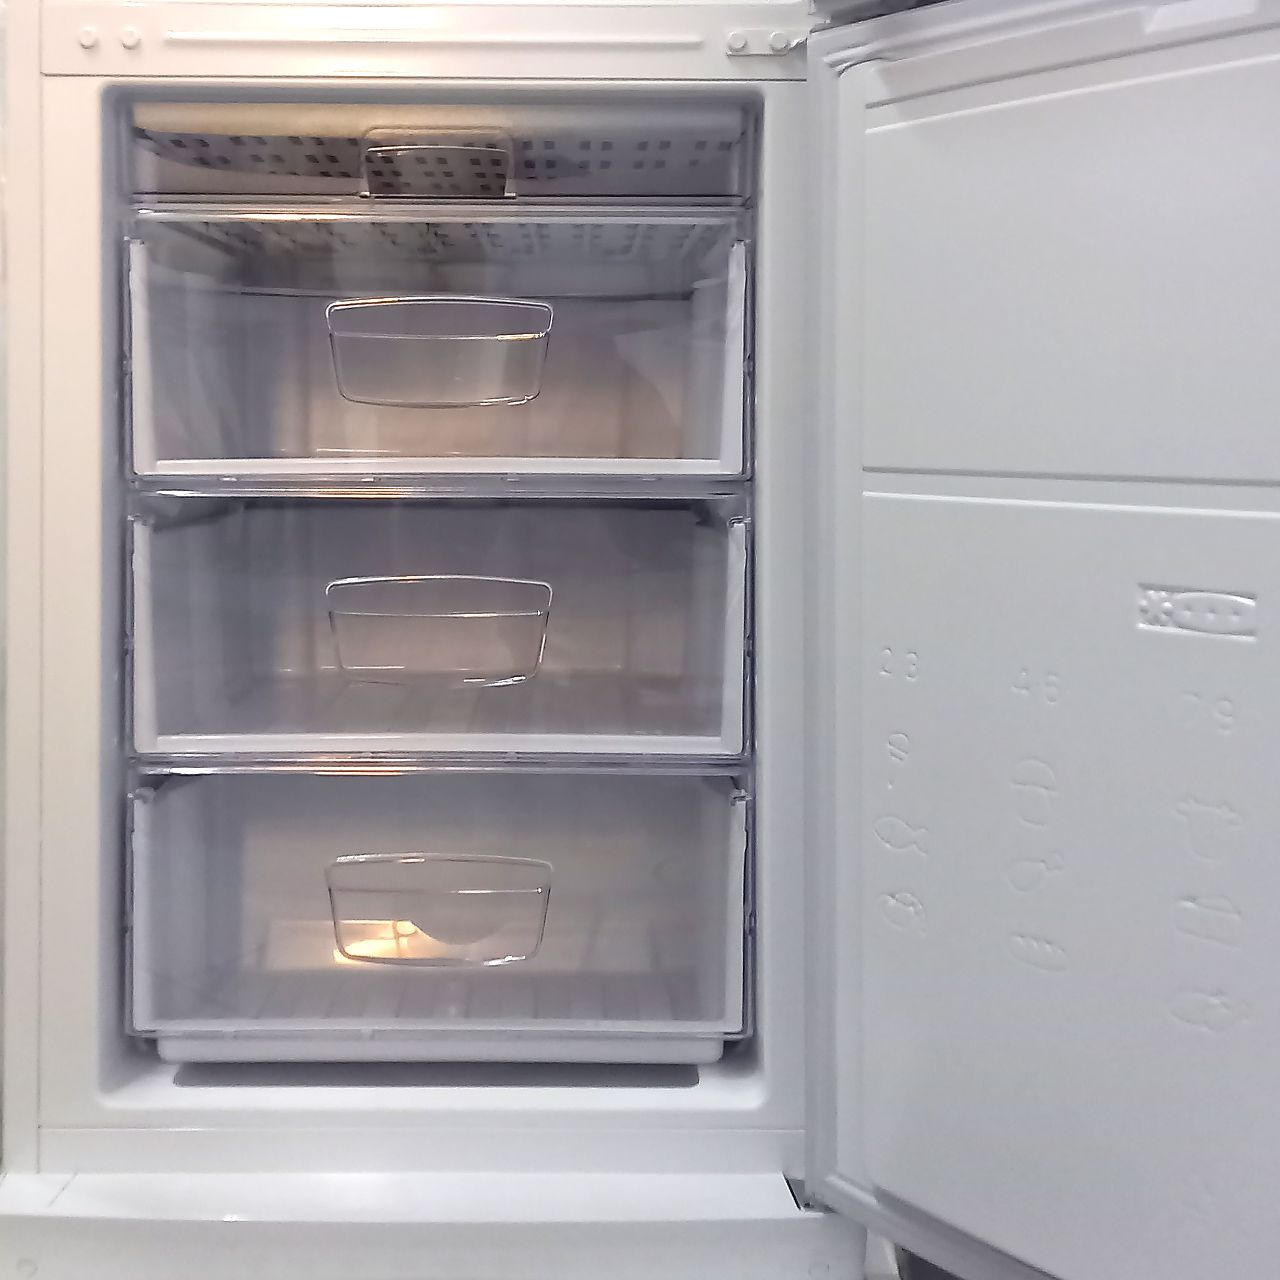 Холодильник двухкамерный Indesit 341 литр